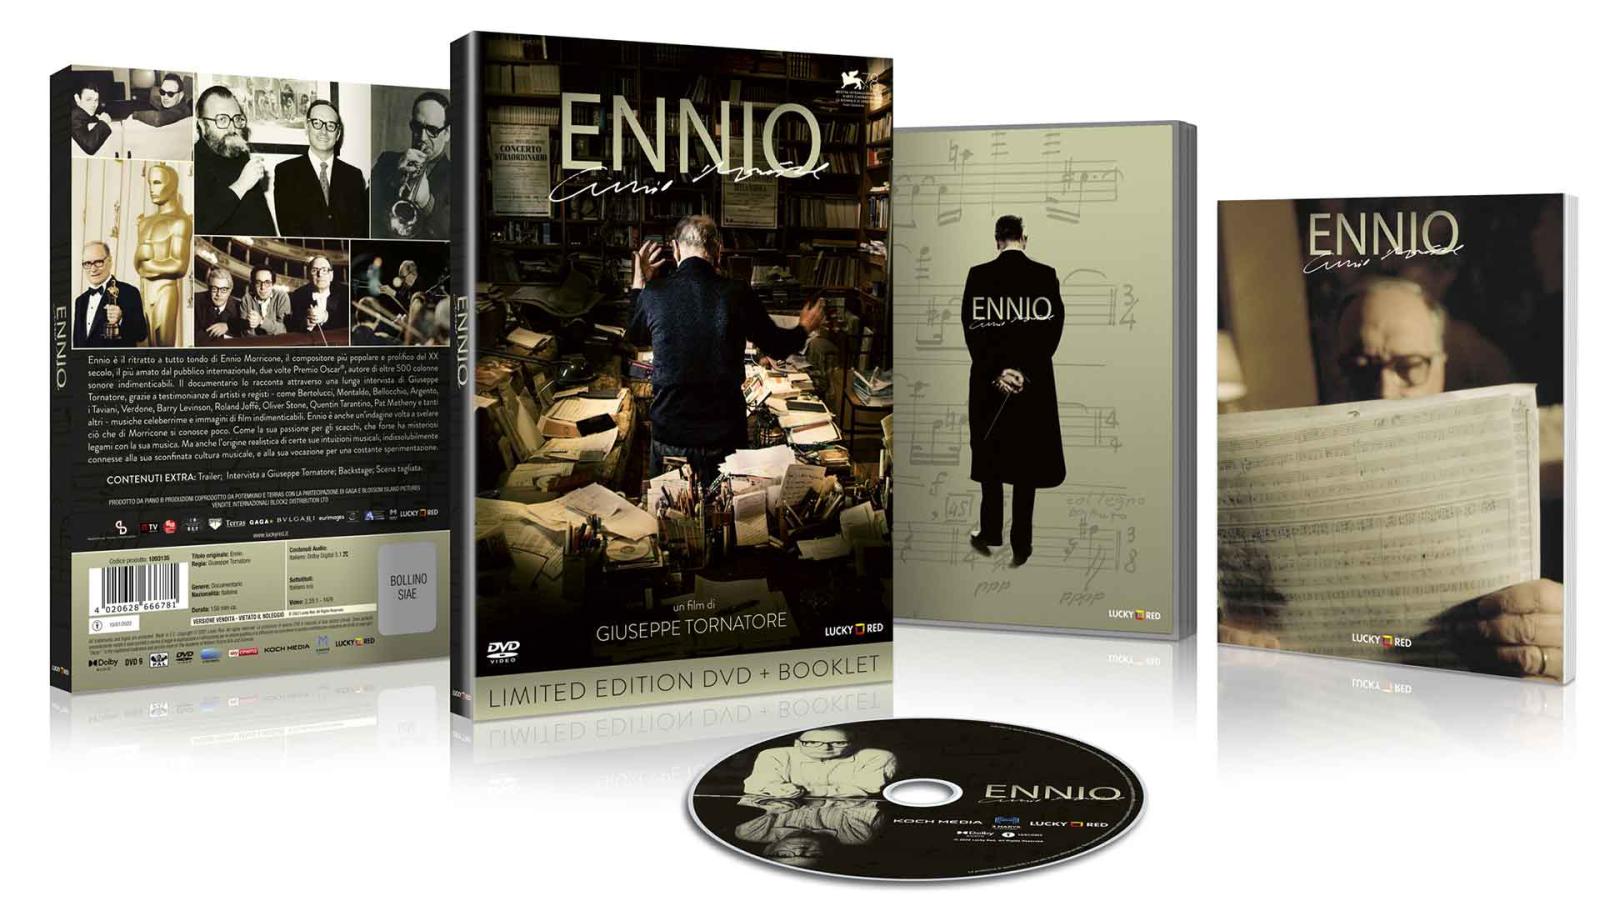 Ennio - DVD + Booklet (DVD) Image 4